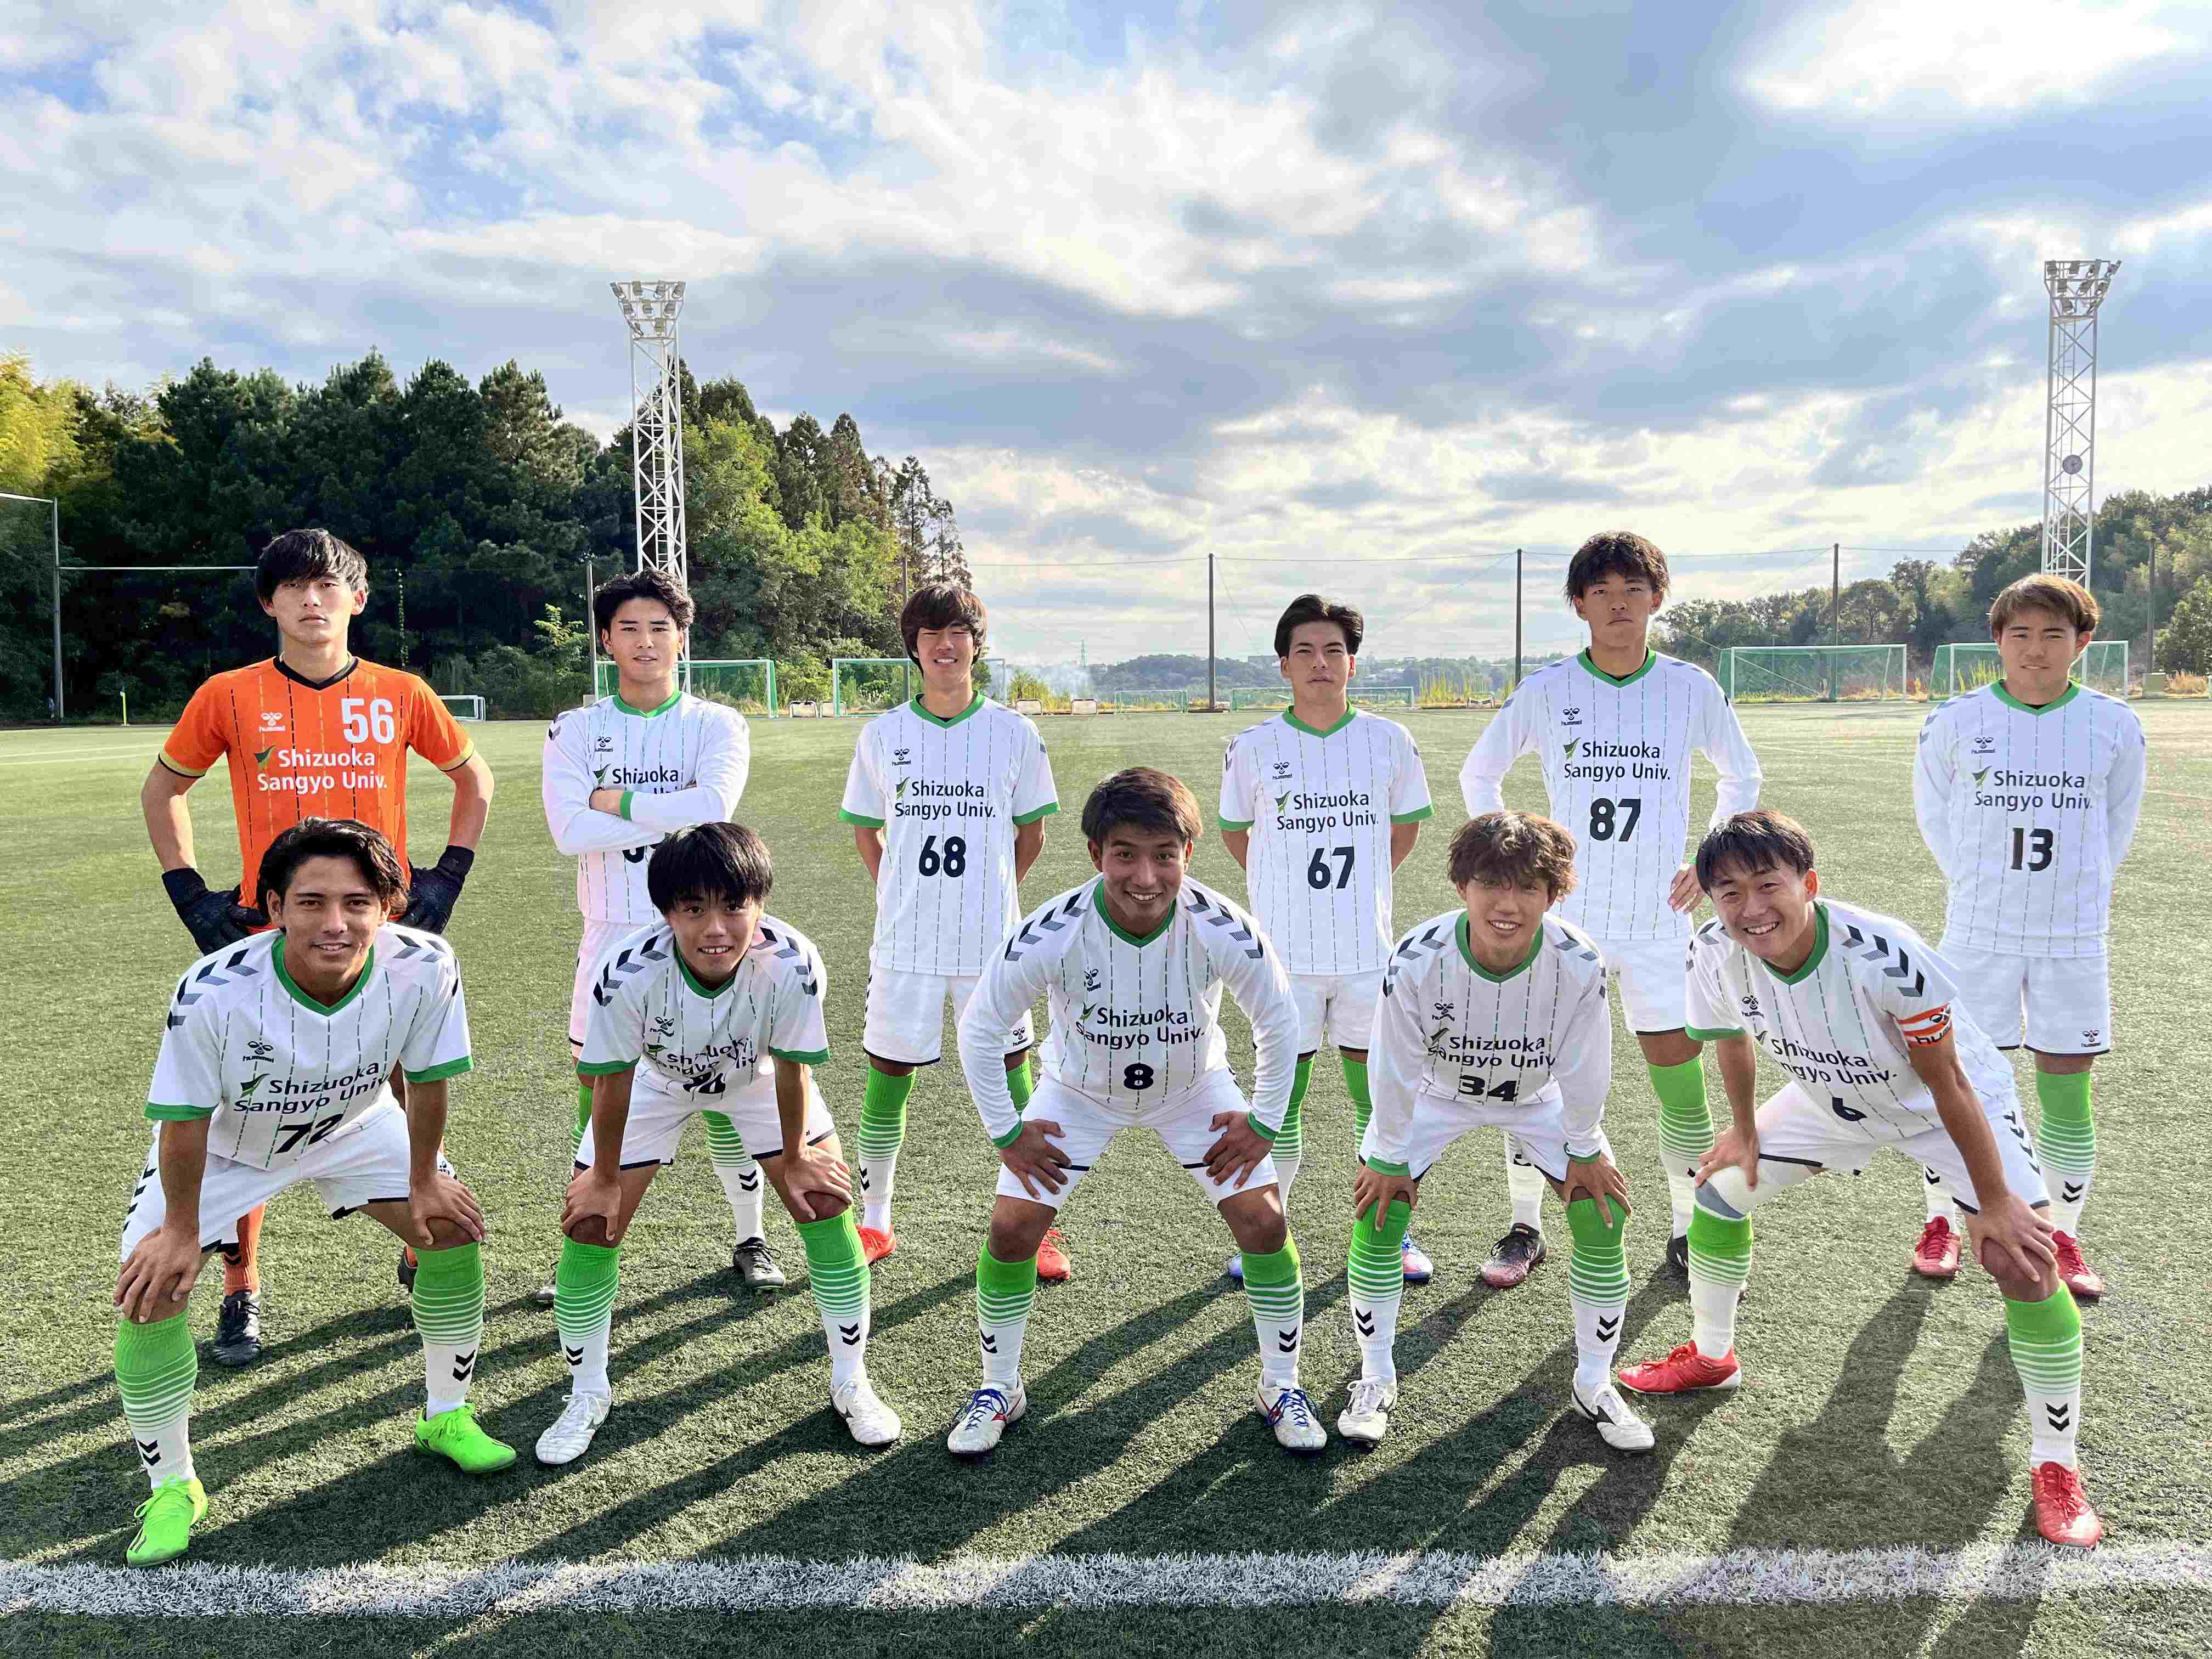 静岡産業大学女子サッカー部 ユニフォーム セット - サッカー/フットサル